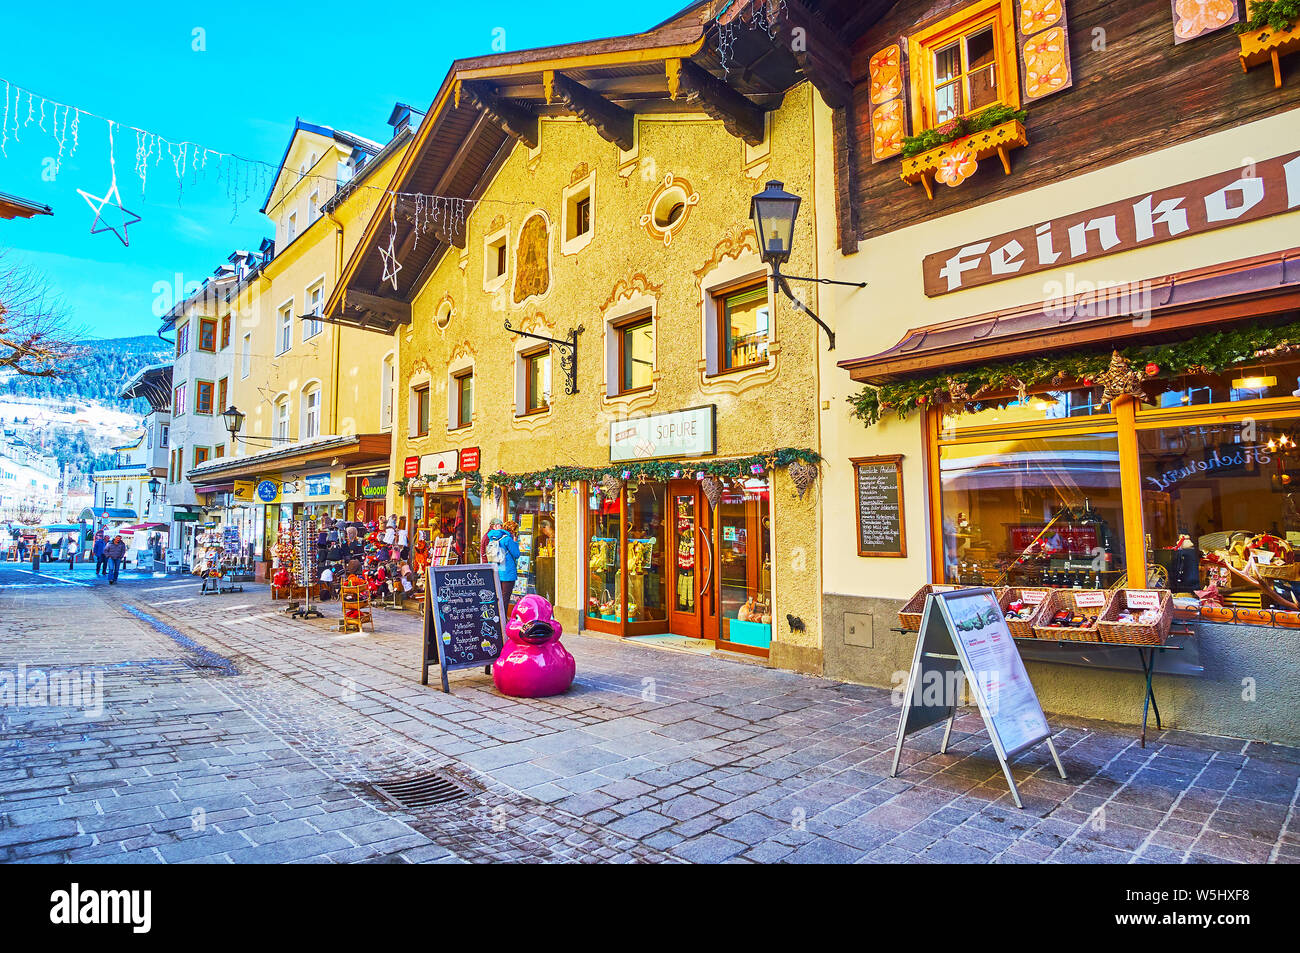 ZELL AM SEE, Austria - 28 febbraio 2019: fare un po' di shopping nella città vecchia e piena di negozi di souvenir e artigianato negozi offre diversi doni locale, cibo Foto Stock